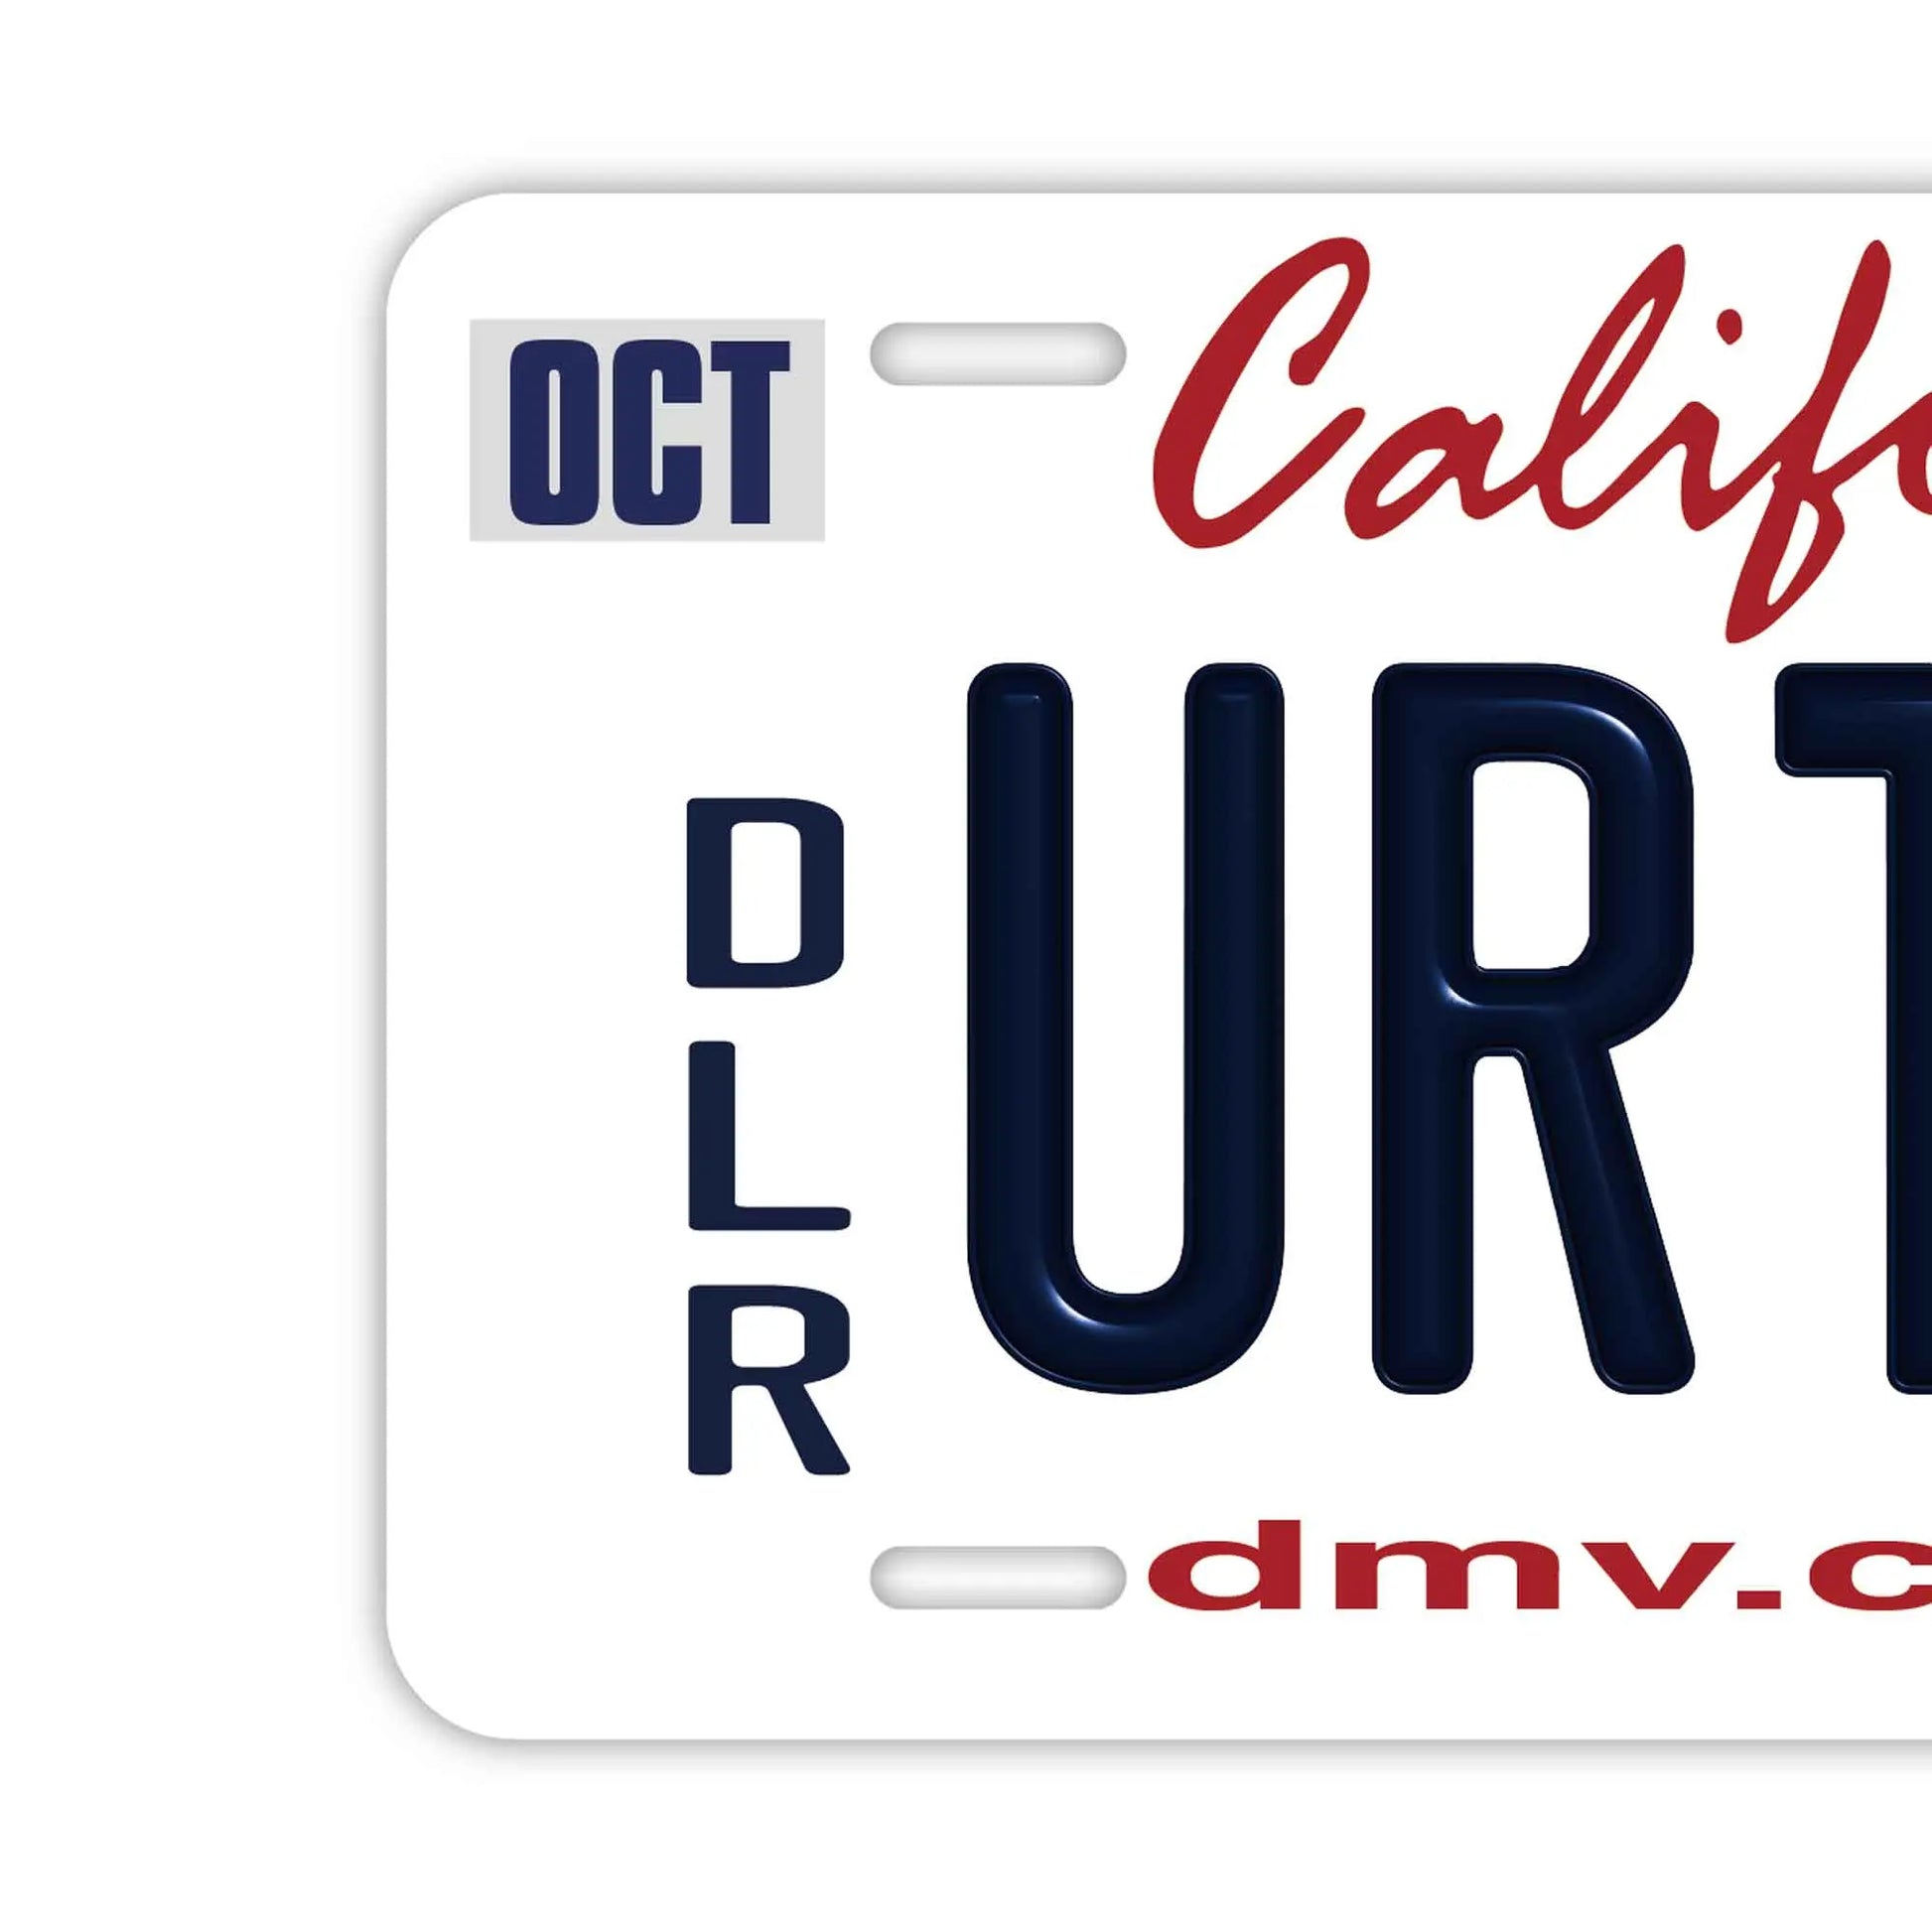 【大・US車用】カリフォルニア2011・ディーラー/オリジナルアメリカエンボスナンバープレート おしゃれ表札看板 PL8HERO